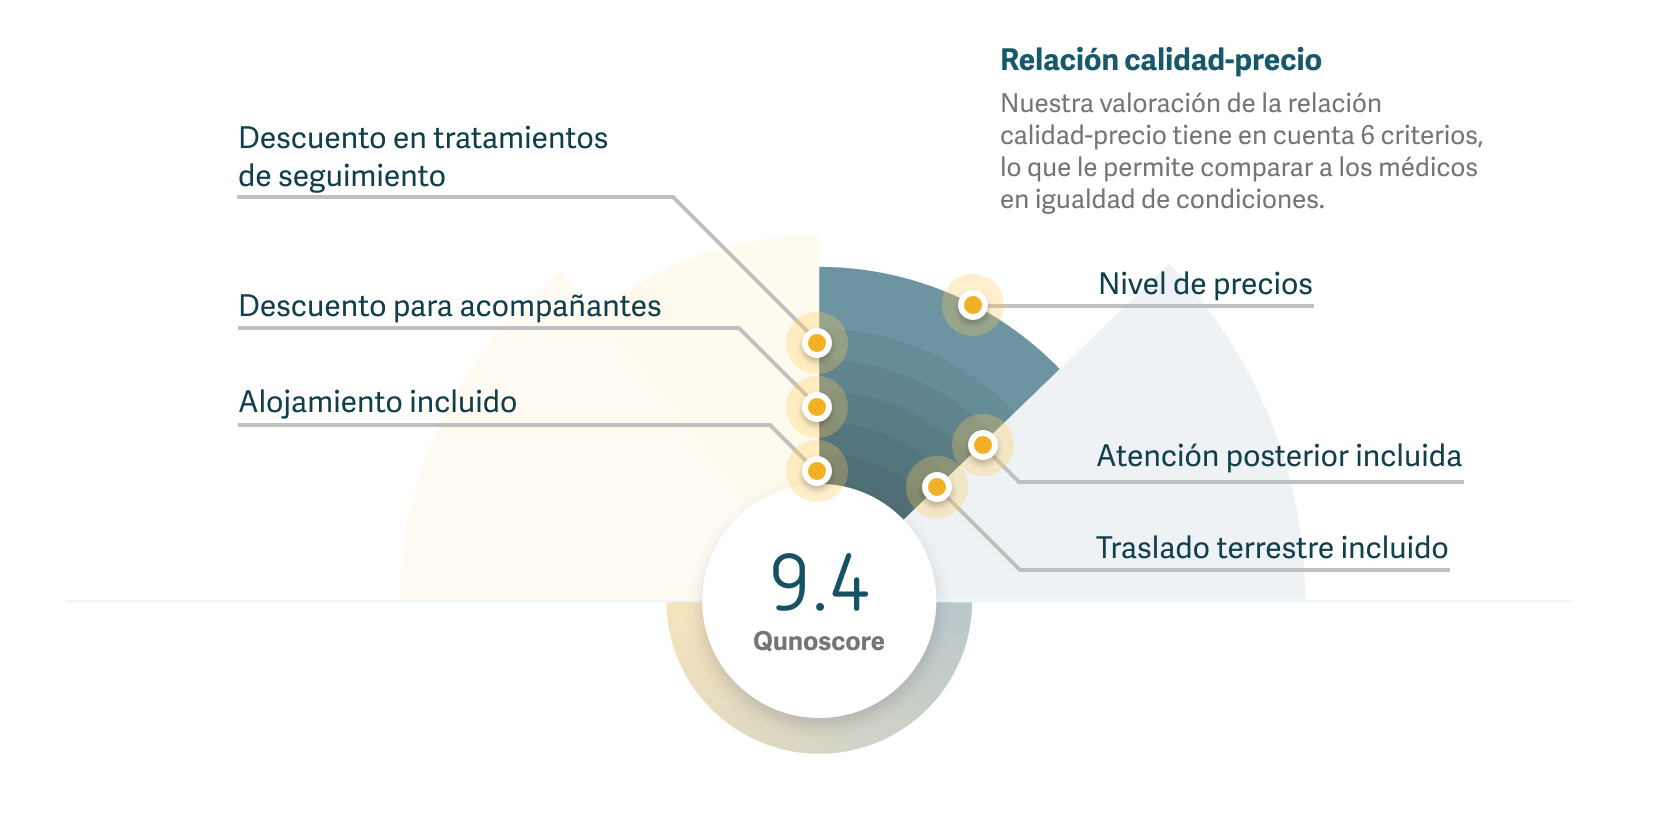 Gráfico que muestra cómo se calcula la relación calidad-precio mediante Qunoscore.